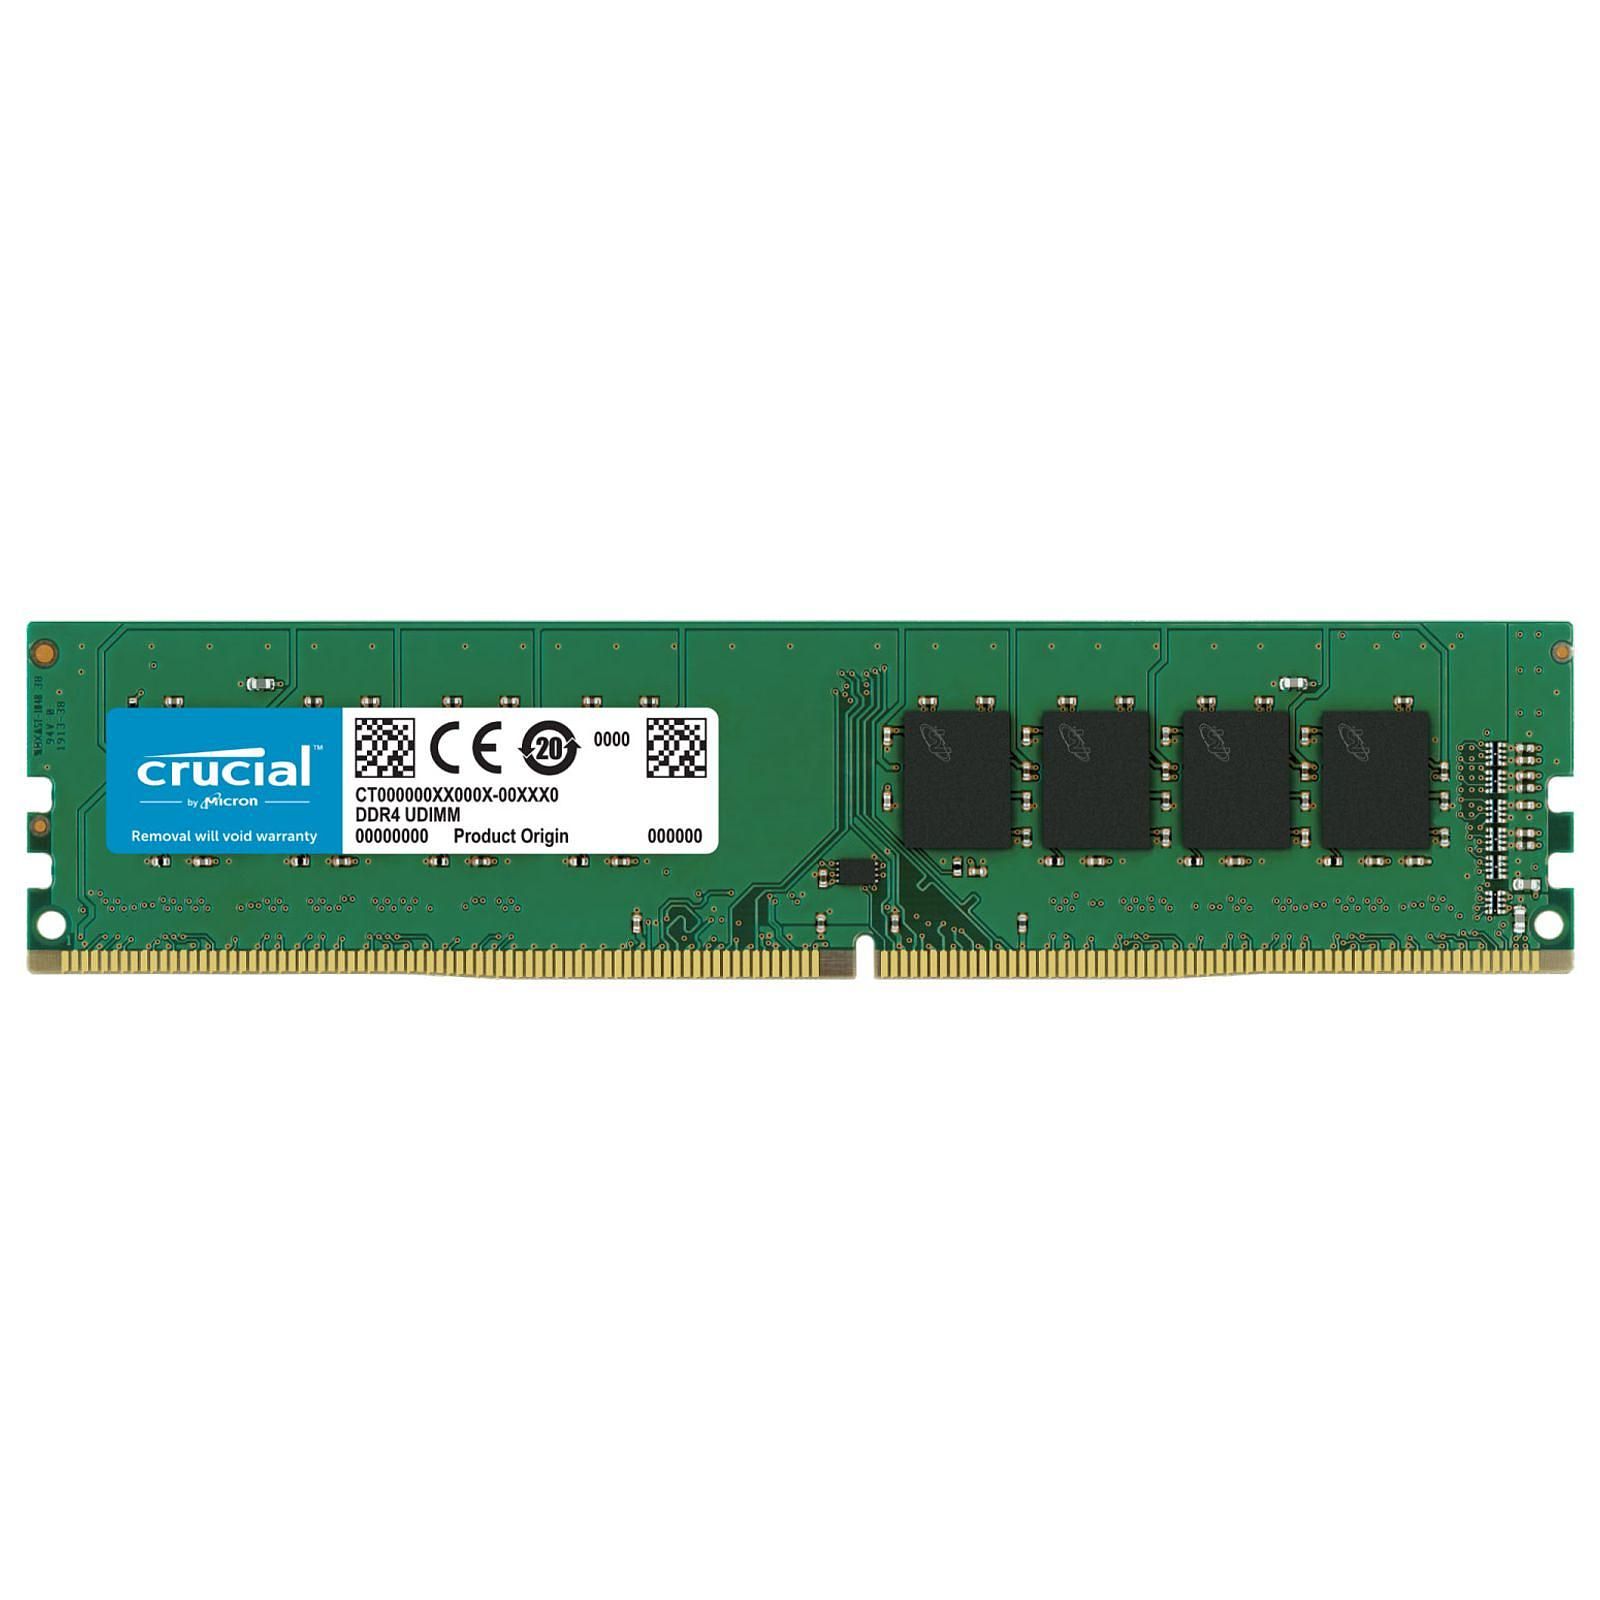 Crucial Pro DRAM Noir 32Go (2x16Go) DDR4 3200MHz - Mémoire PC Crucial sur